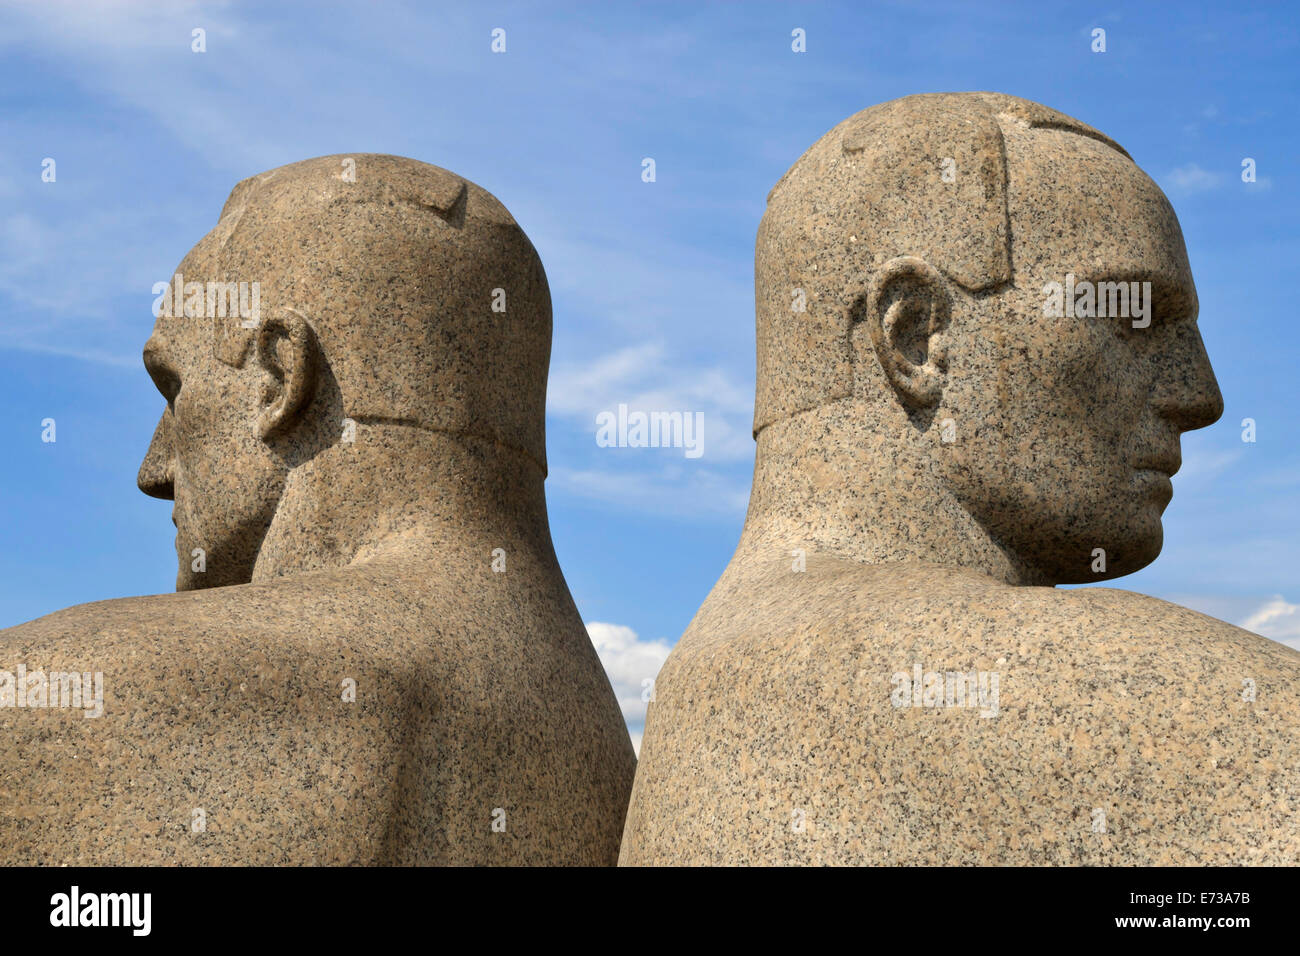 Di schiena, il dettaglio di un gruppo scultoreo sul monolito Plateau da Gustav Vigeland, Frogner Park, Oslo, Norvegia, Scandinavia Foto Stock